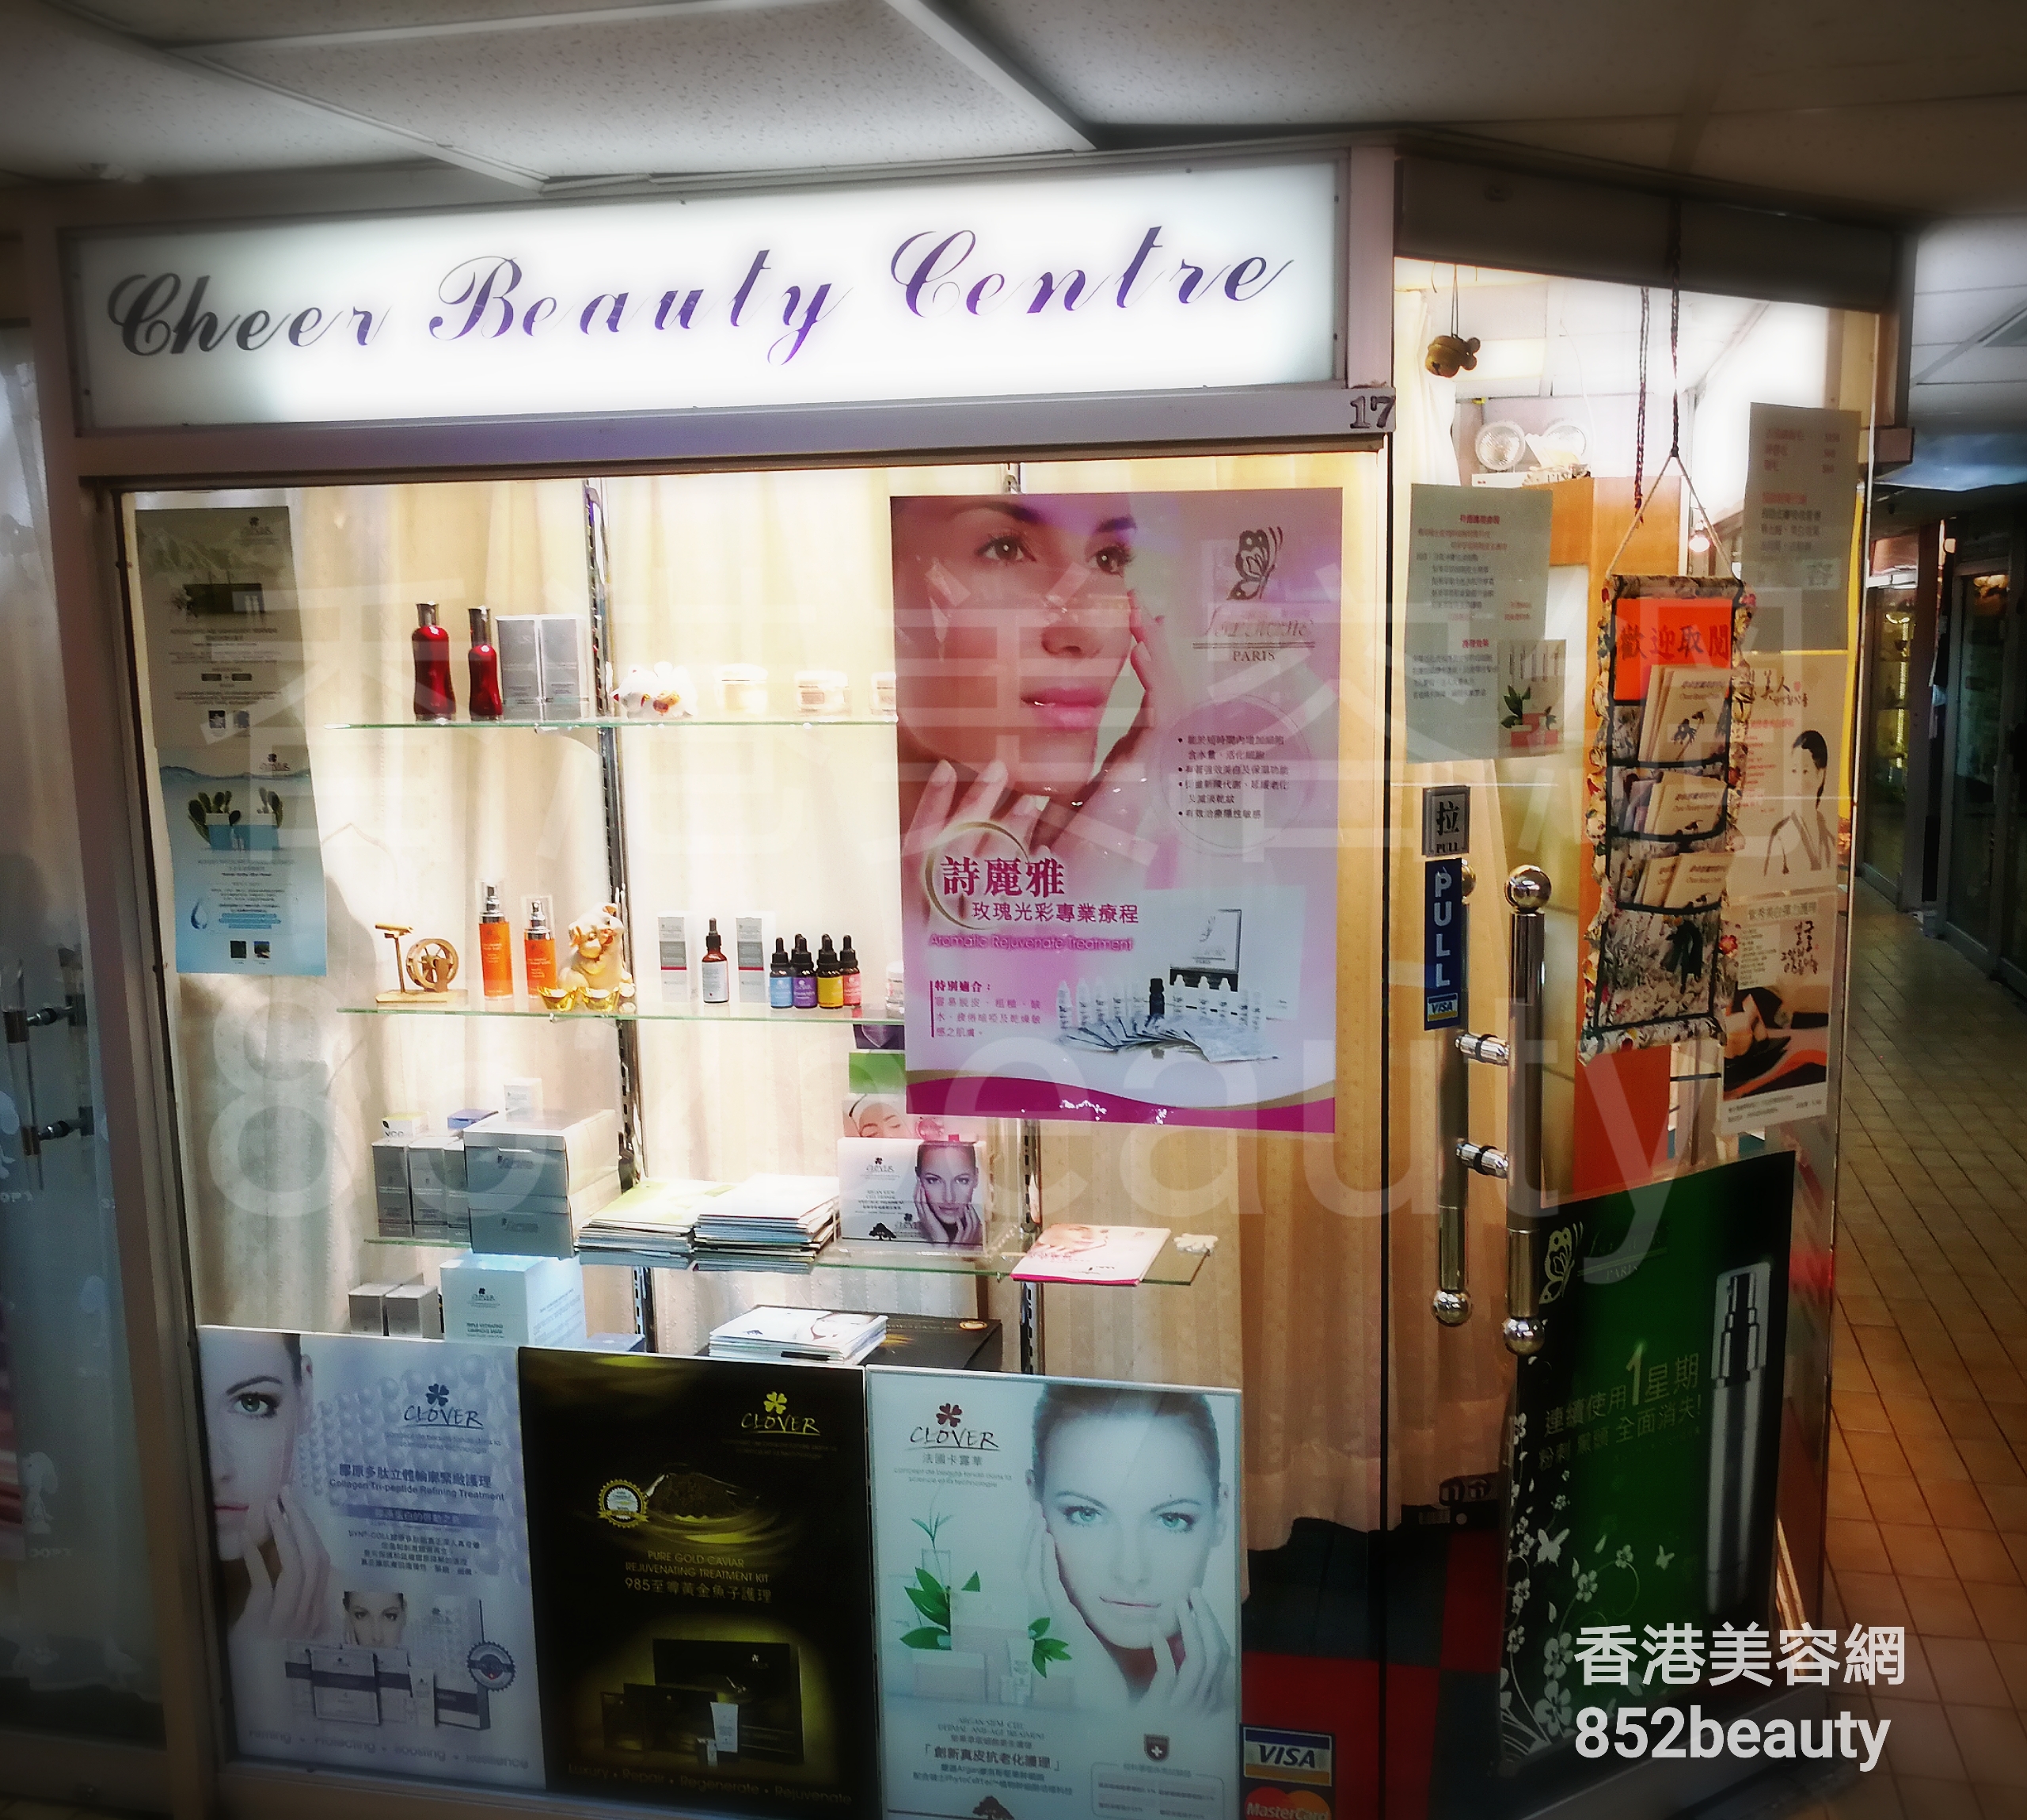 脫毛: Cheer Beauty Centre